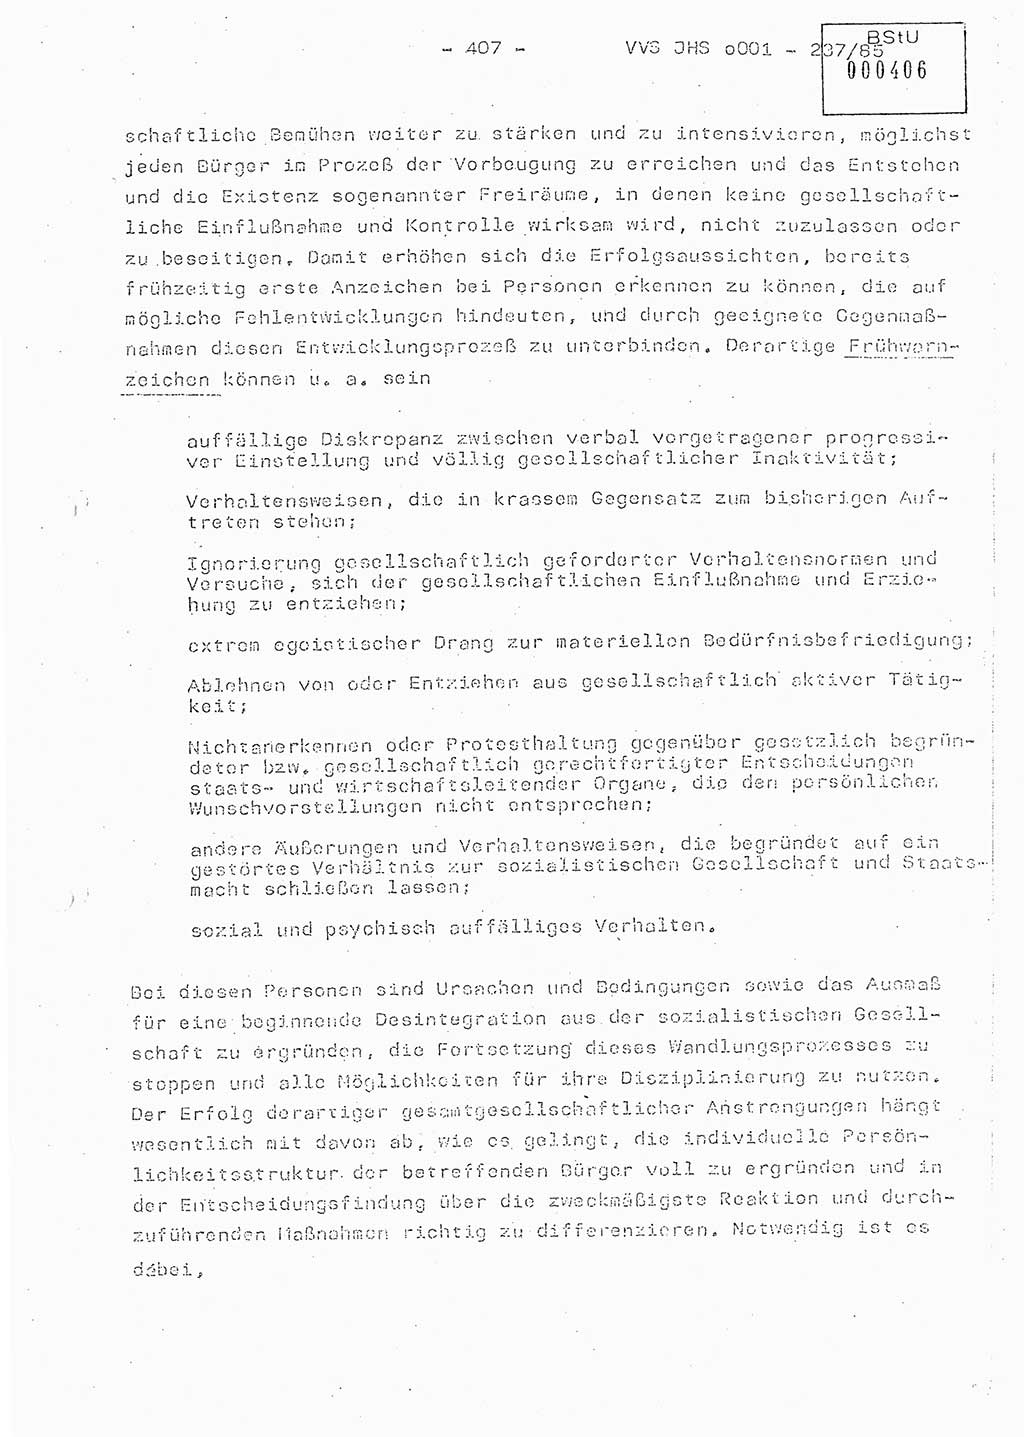 Dissertation Oberstleutnant Peter Jakulski (JHS), Oberstleutnat Christian Rudolph (HA Ⅸ), Major Horst Böttger (ZMD), Major Wolfgang Grüneberg (JHS), Major Albert Meutsch (JHS), Ministerium für Staatssicherheit (MfS) [Deutsche Demokratische Republik (DDR)], Juristische Hochschule (JHS), Vertrauliche Verschlußsache (VVS) o001-237/85, Potsdam 1985, Seite 407 (Diss. MfS DDR JHS VVS o001-237/85 1985, S. 407)